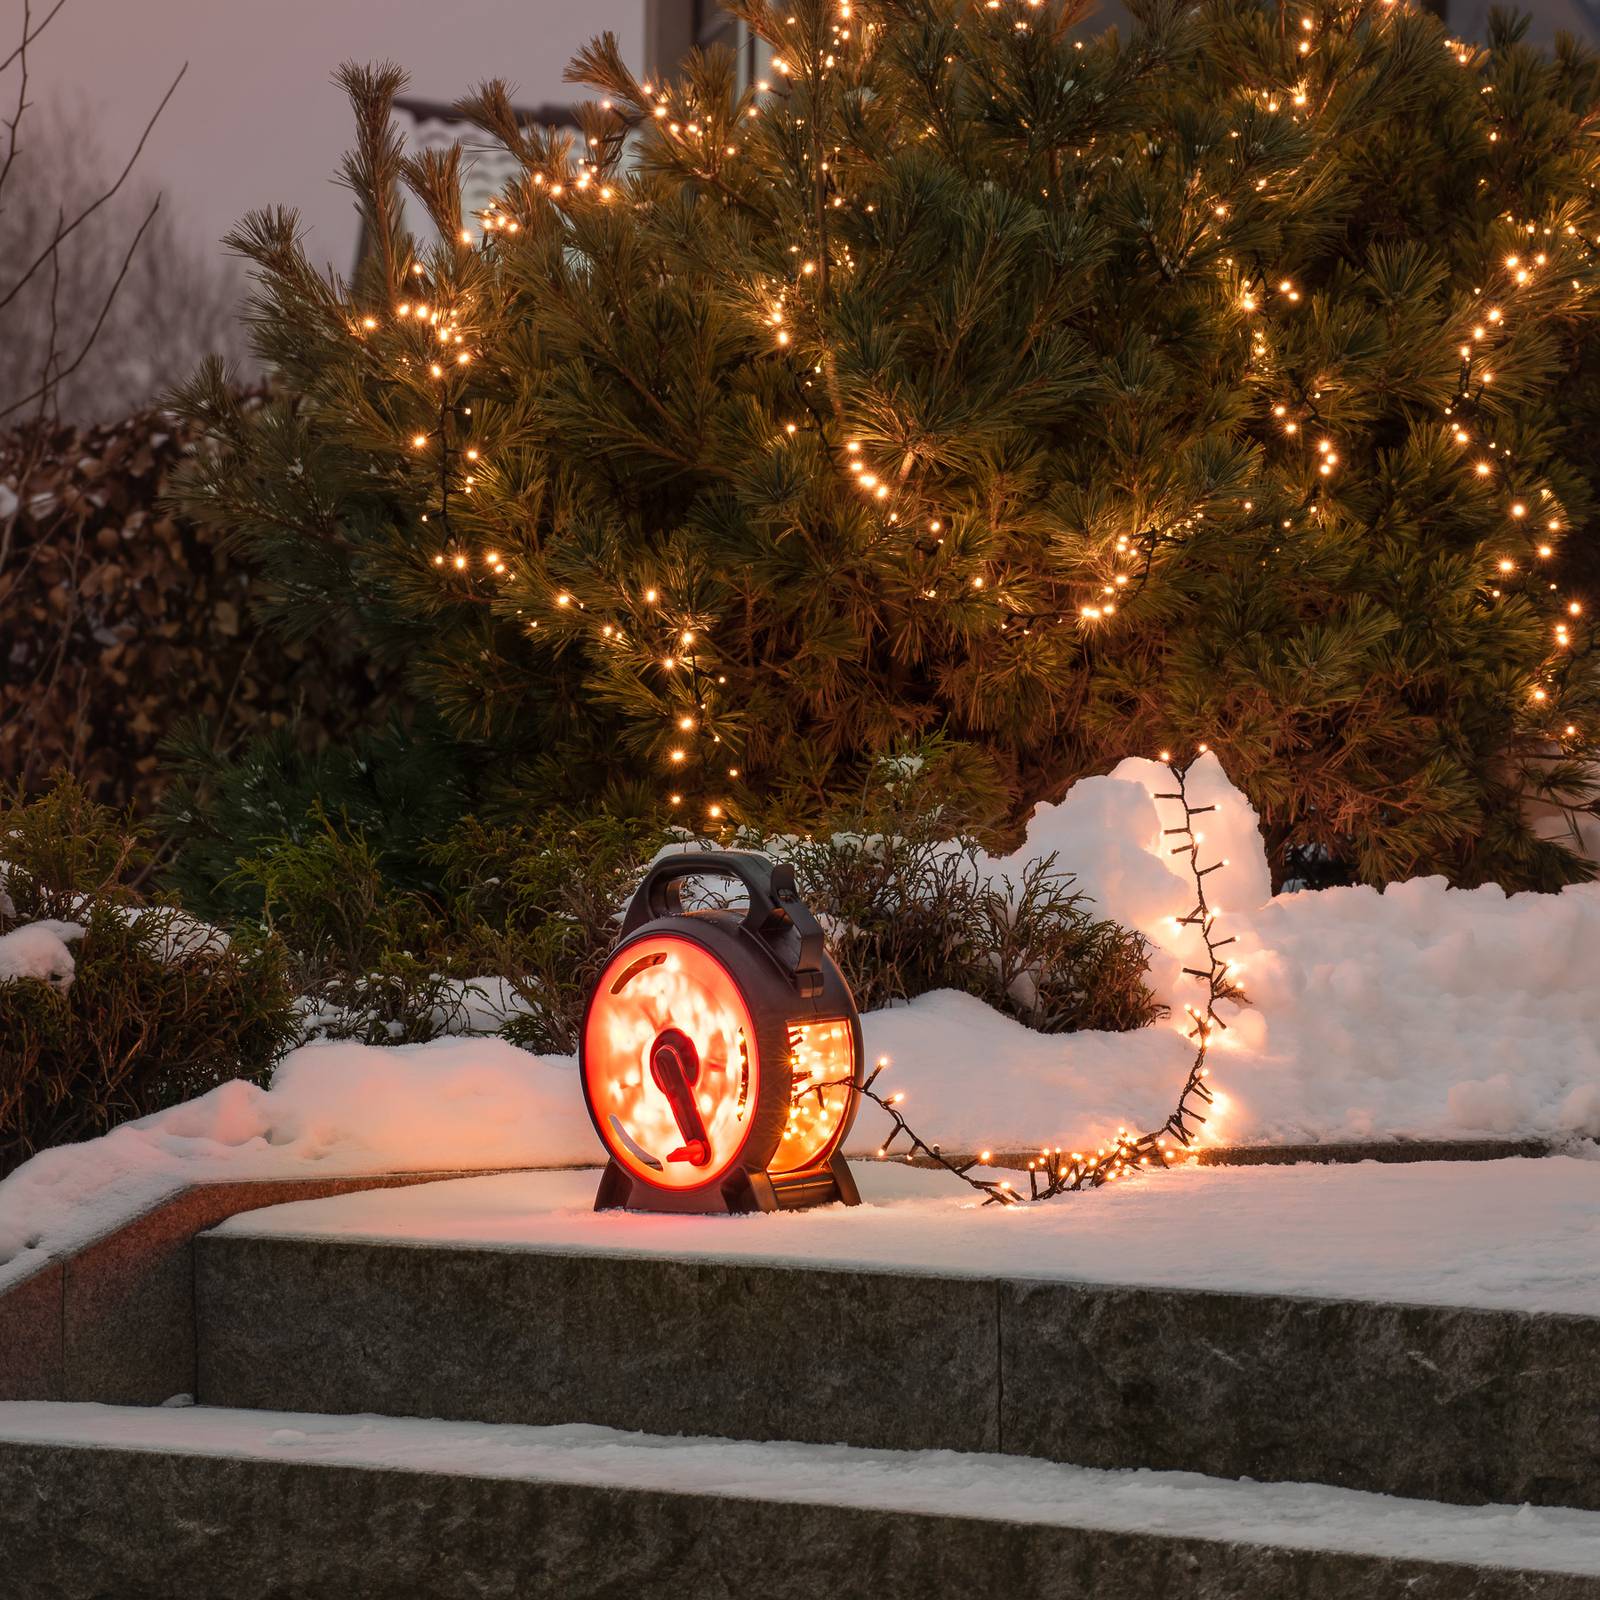 Konstsmide Christmas LED víla světla Kompaktní jantarová 1000LEDs 21,98m